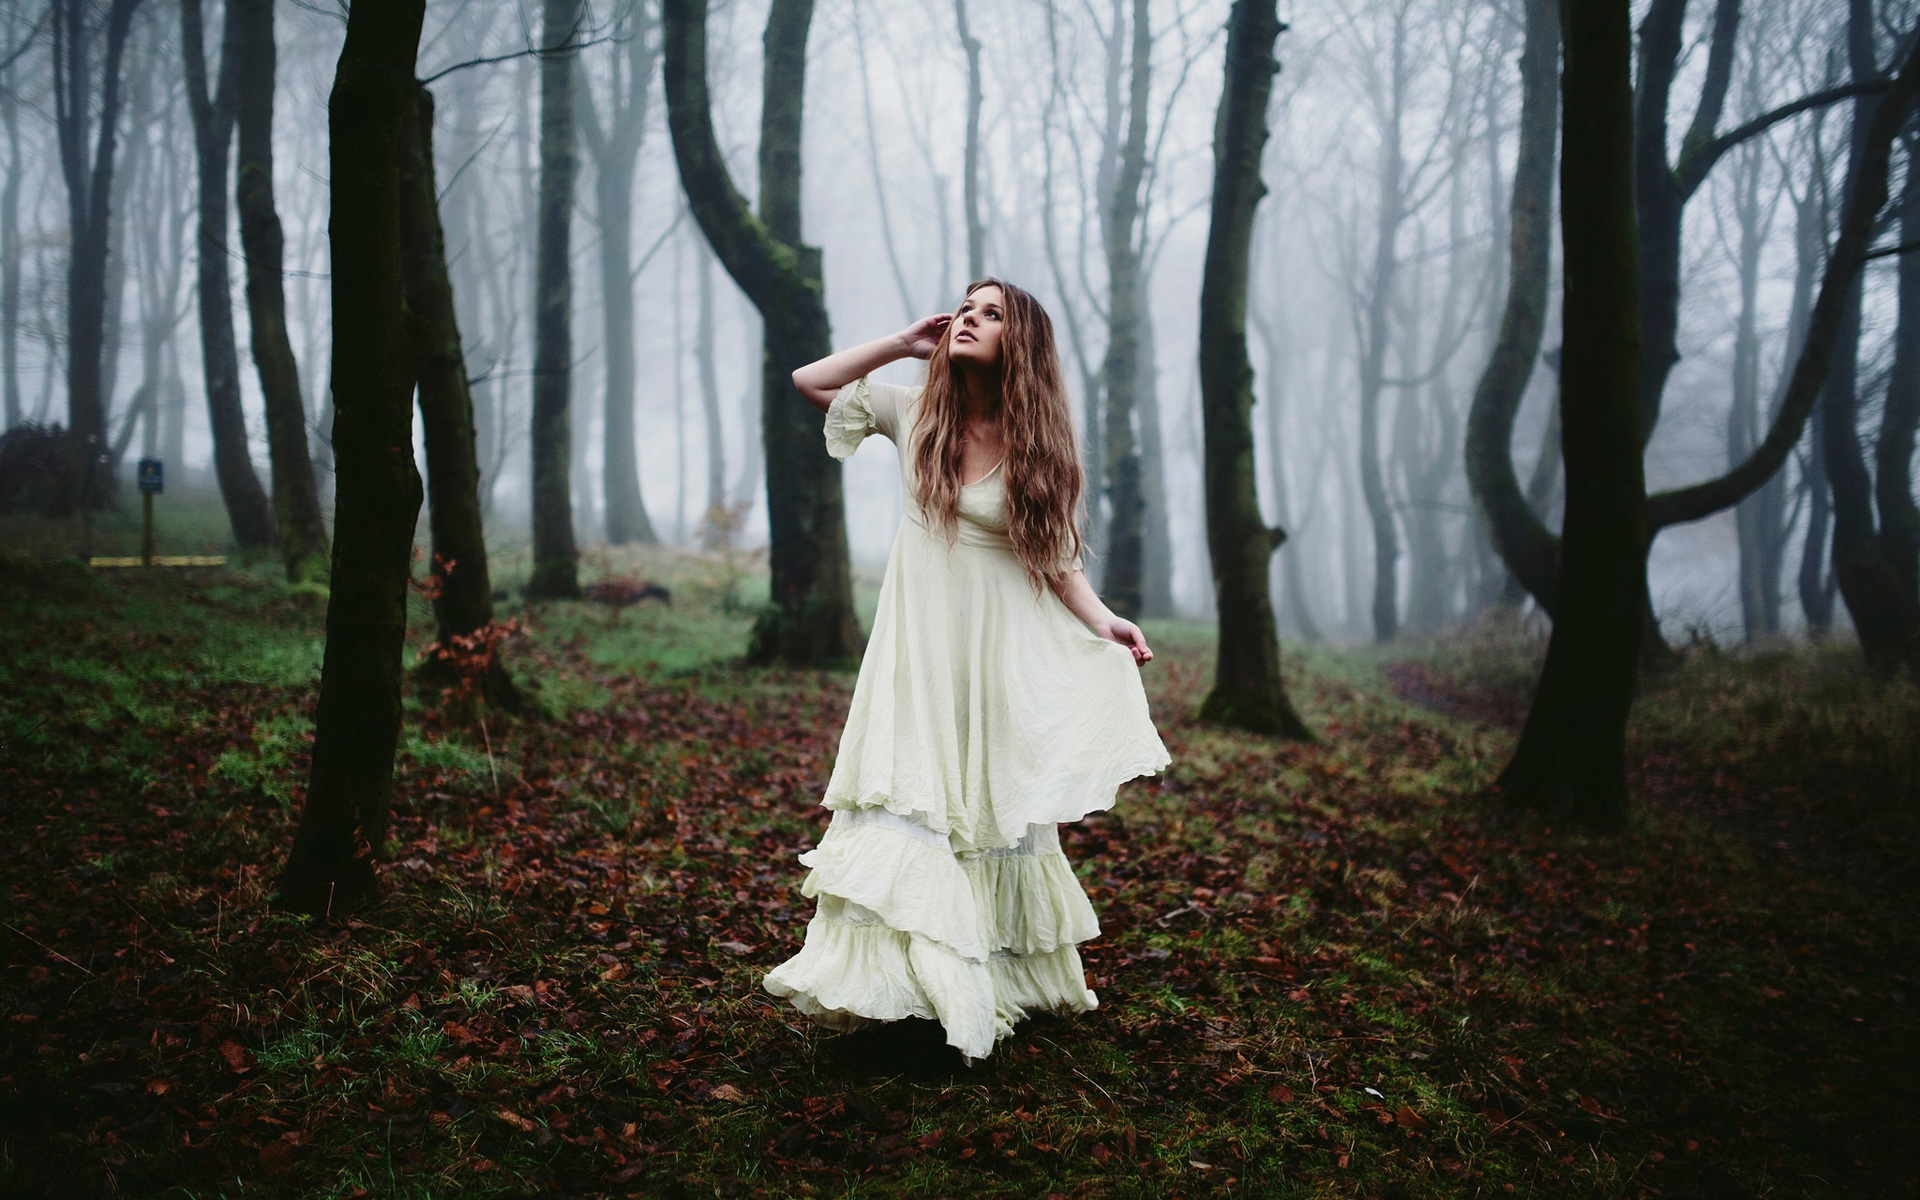 Forest-white-dress-girl-morning-fog_1920x1200.jpg